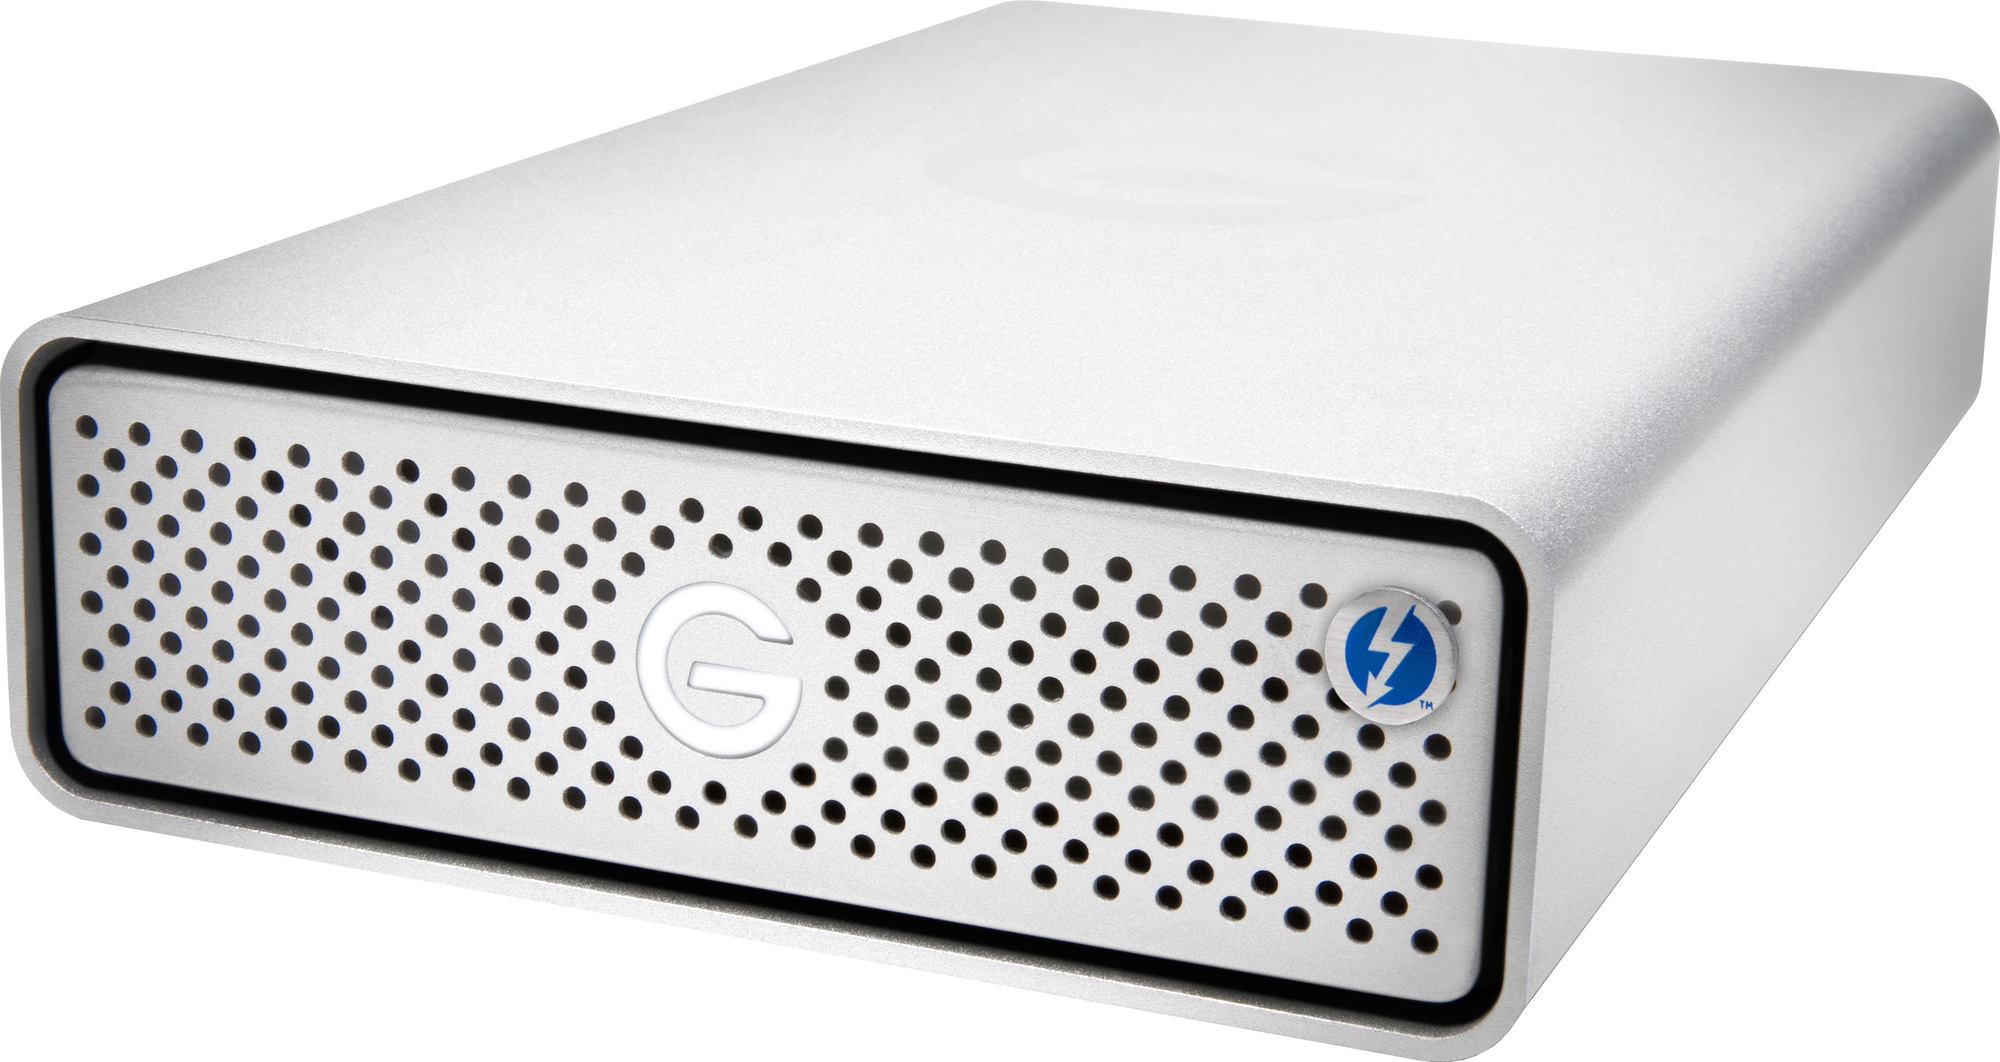 G-drive Thunderbolt 3 4TB ekstern harddisk | Elgiganten